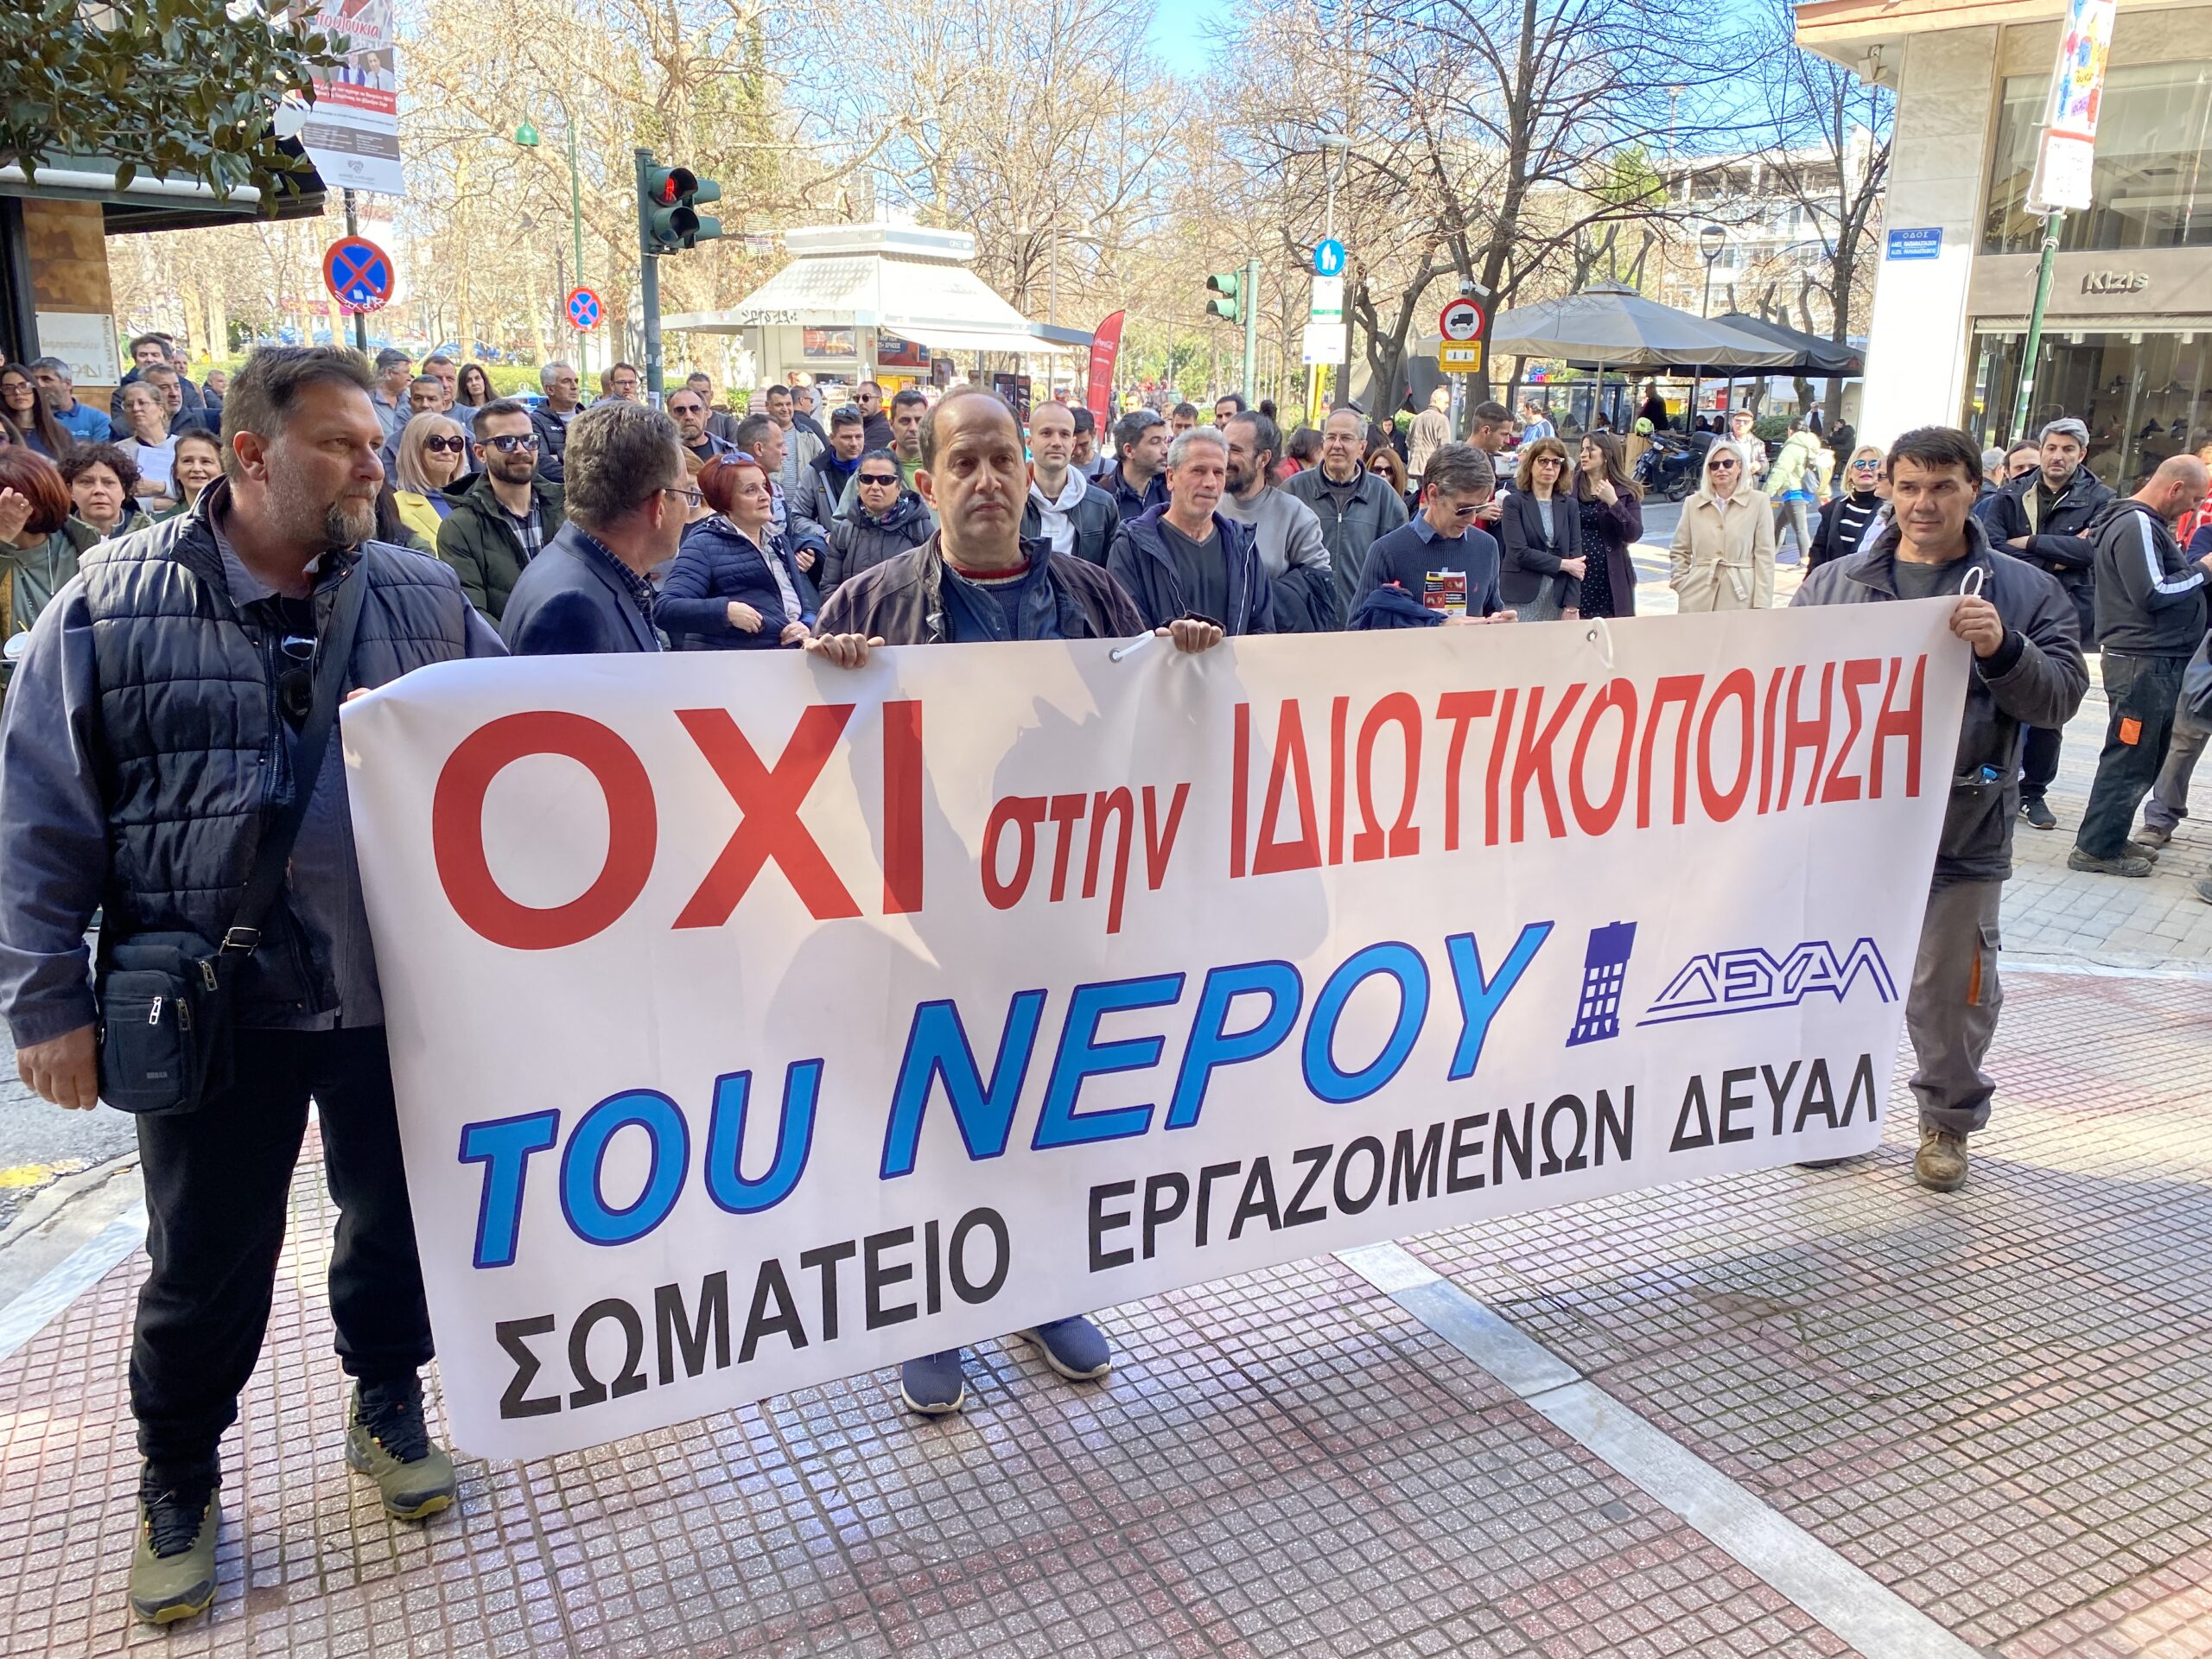 ΔΕΥΑΛ – Πορεία διαμαρτυρίας: “Απόσυρσυρση του νομοσχεδίου ιδιωτικοποίησης τώρα” (ΦΩΤΟ)